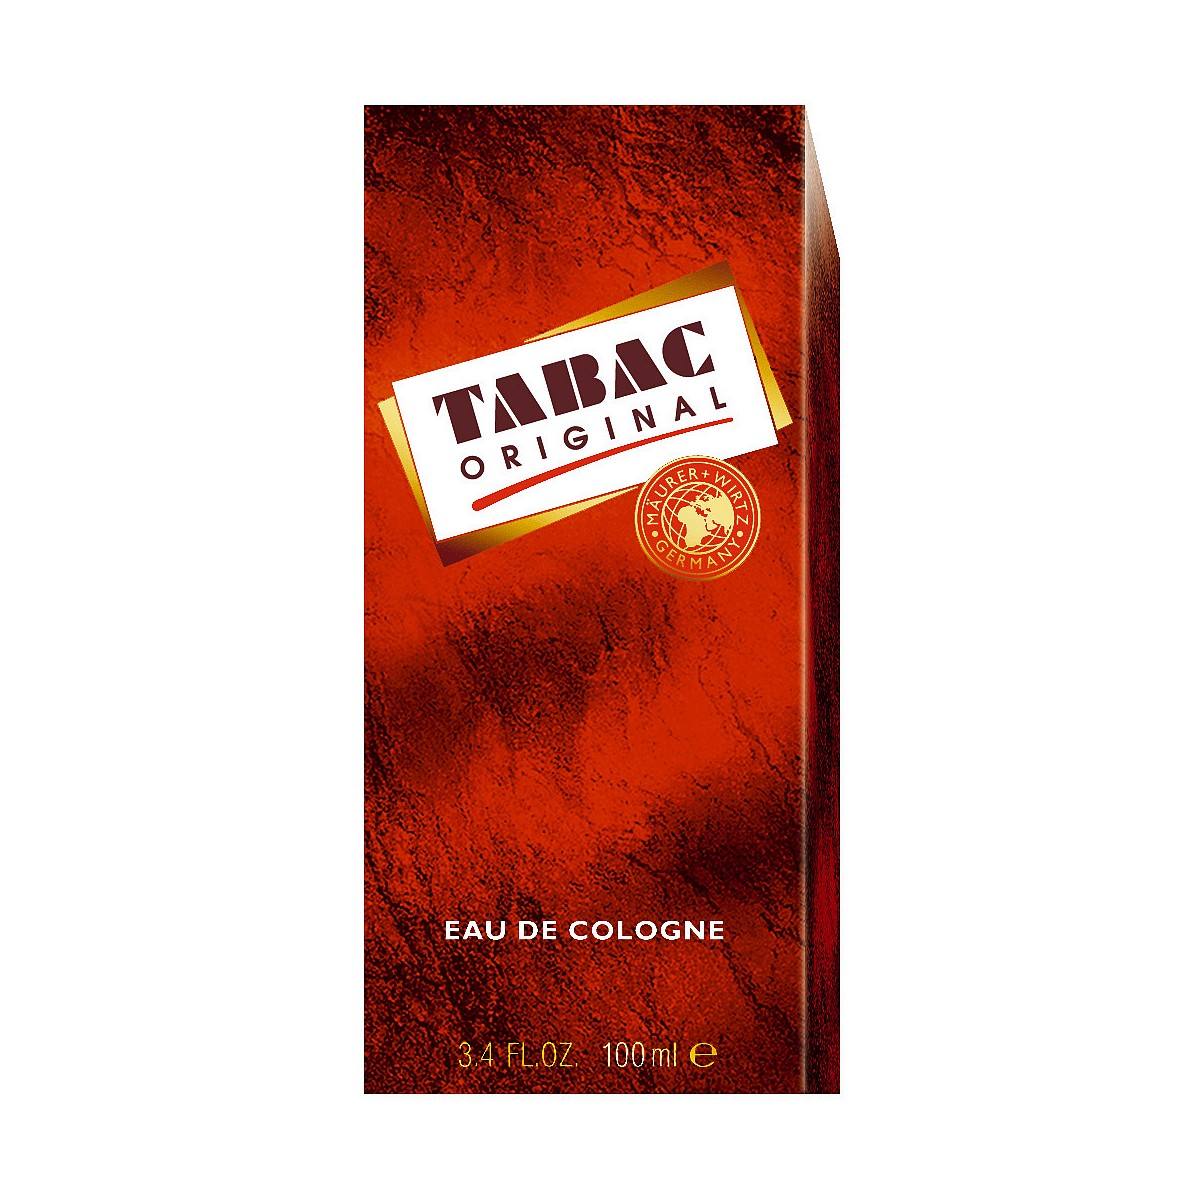 Tabac Original Eau de Cologne 150ml